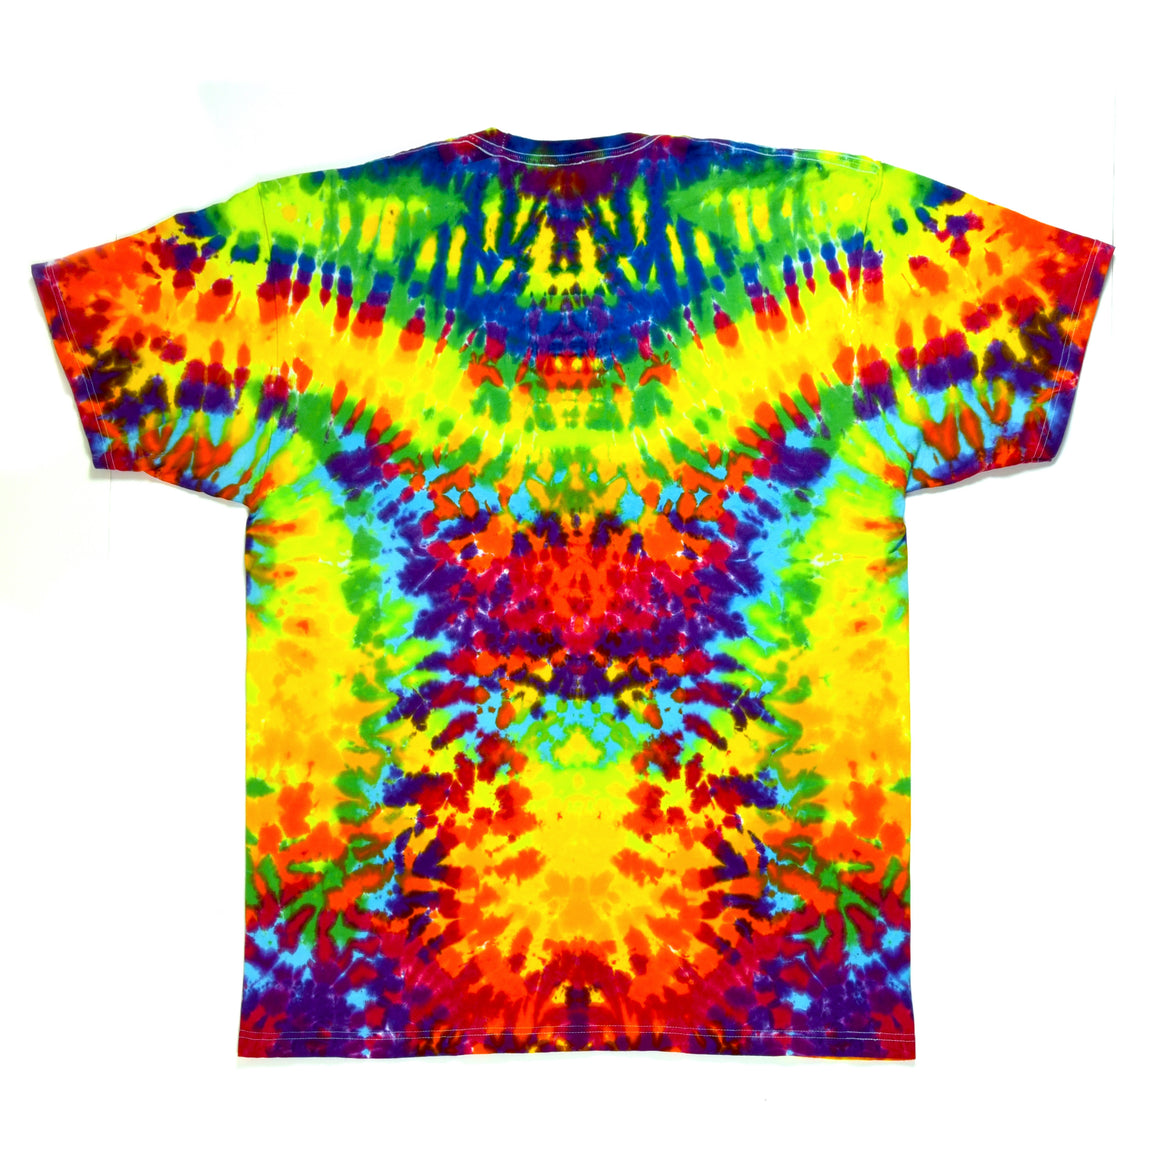 XL Tie Dye T-Shirt - "Tie Dye Dude"